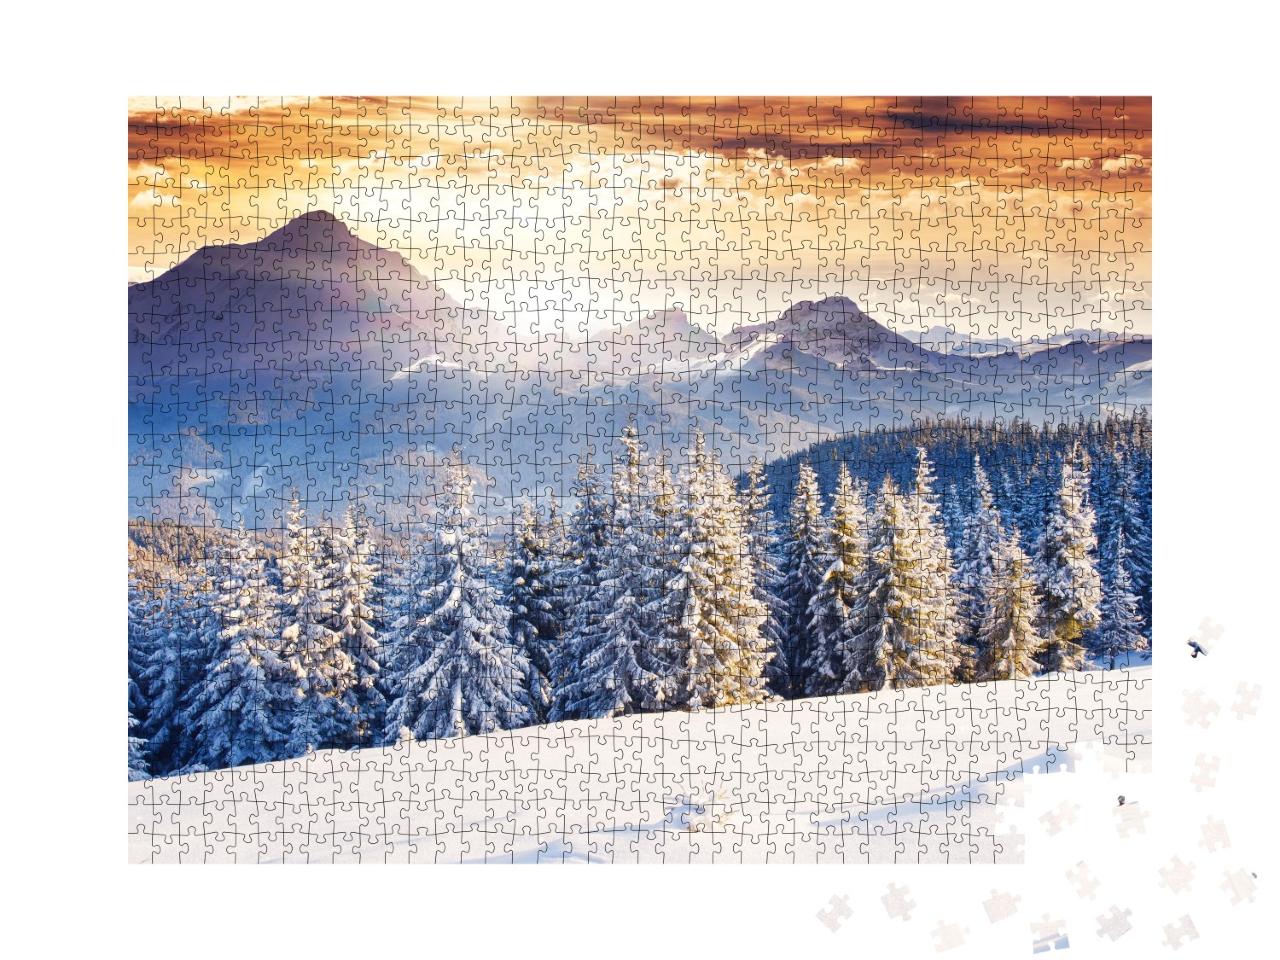 Puzzle 1000 Teile „Fantastische abendliche Winterlandschaft mit dramatischem Himmel“